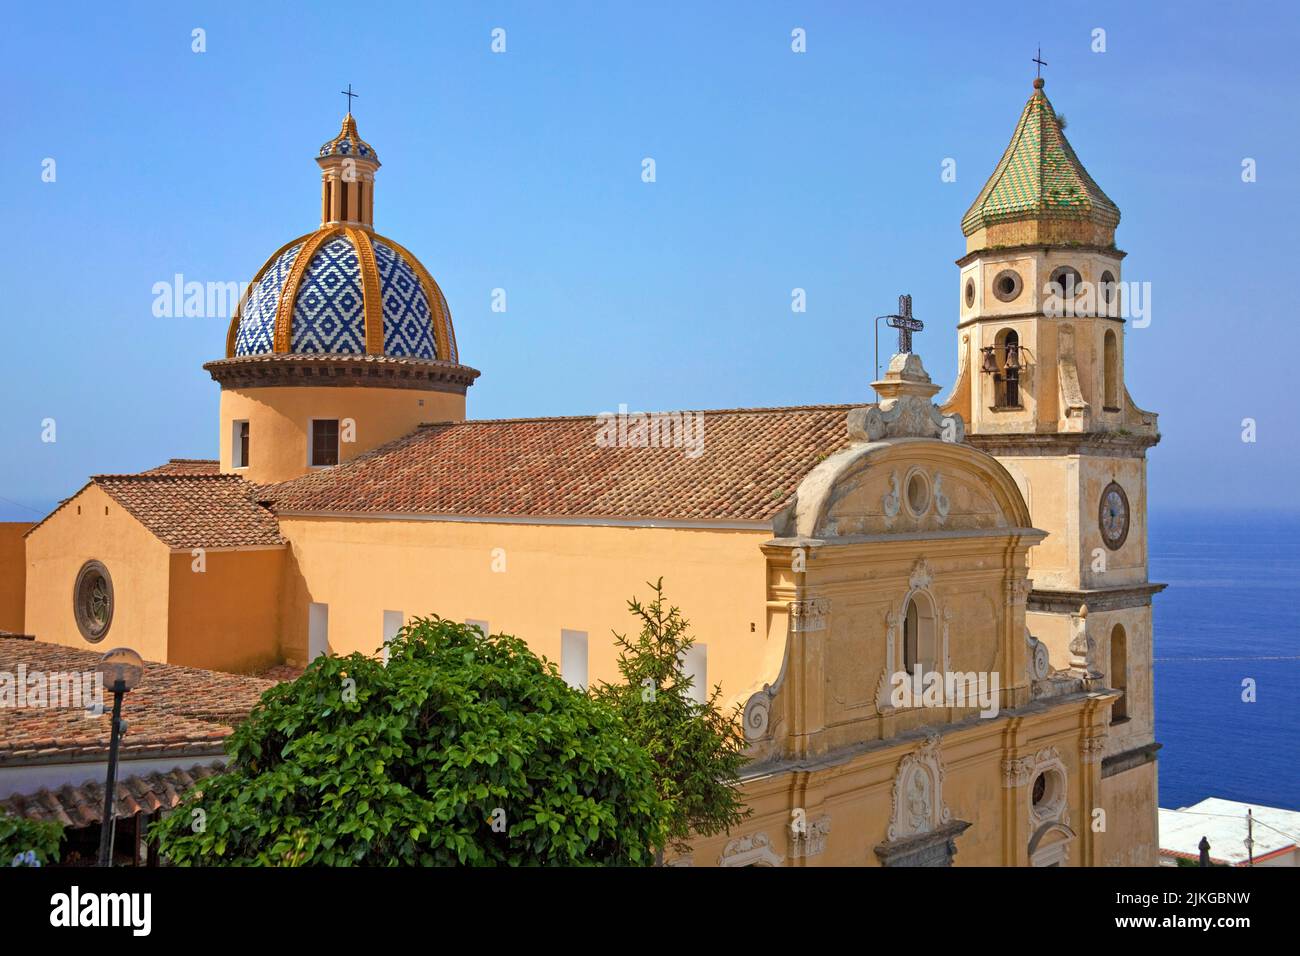 Eglise San Gennaro dans le village Praiano, côte amalfitaine, site classé au patrimoine mondial de l'UNESCO, Campanie, Italie, mer Méditerranée, Europe Banque D'Images